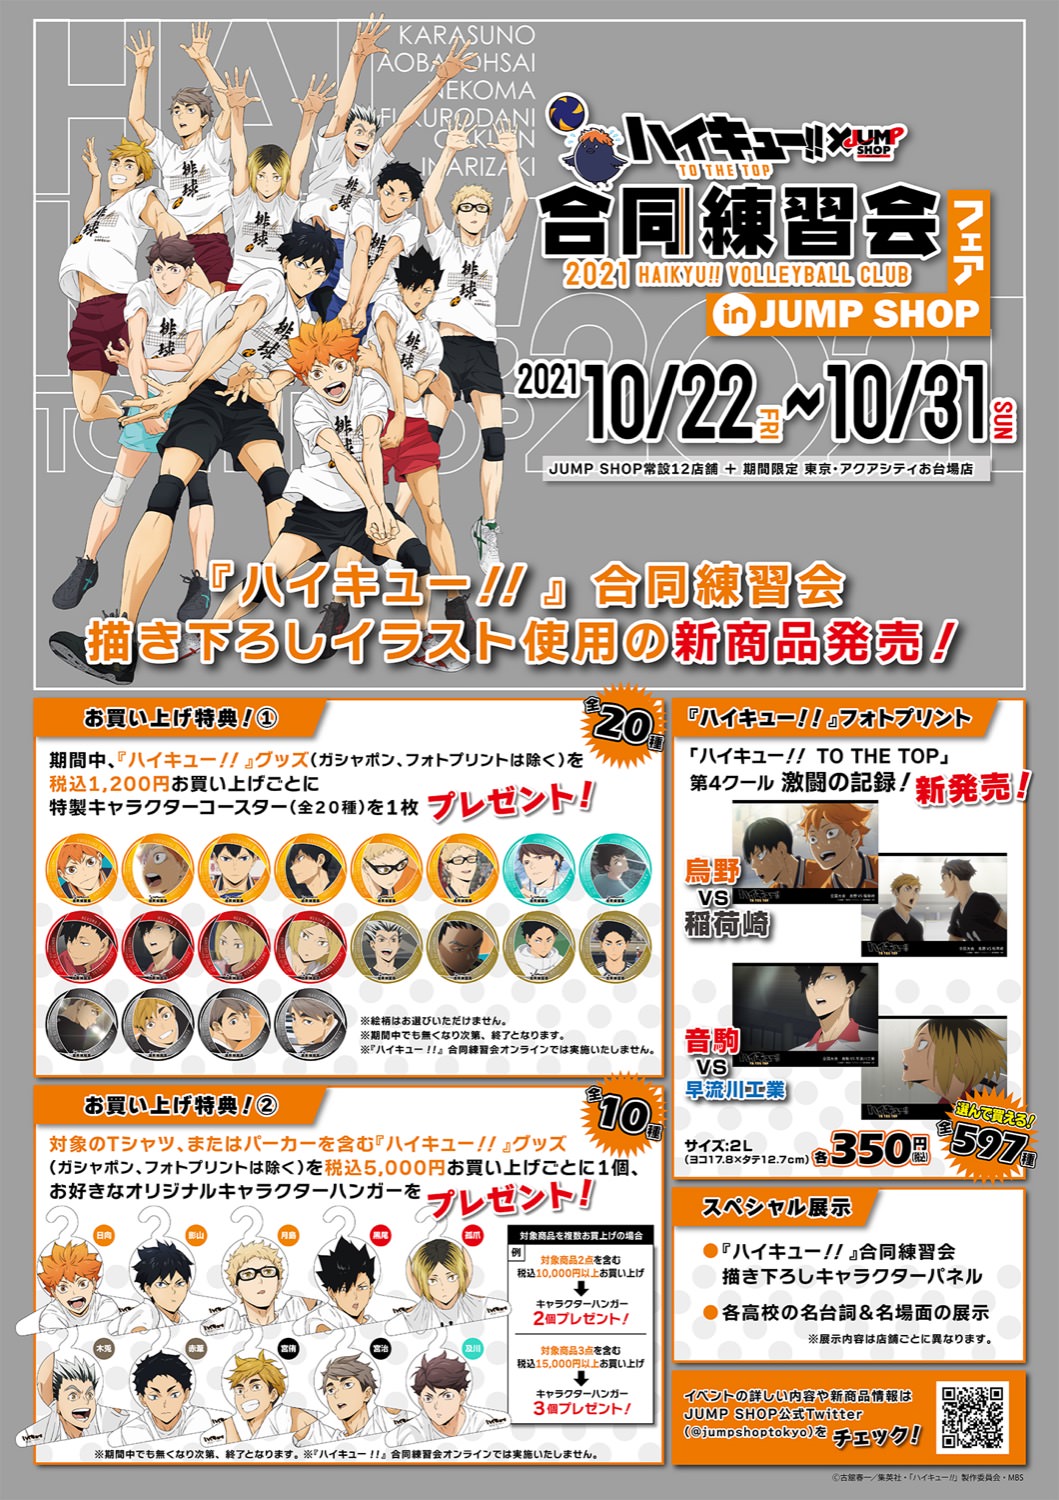 ハイキュー!! × JUMP SHOP 10月22日より描き下ろし合同練習会 実施!